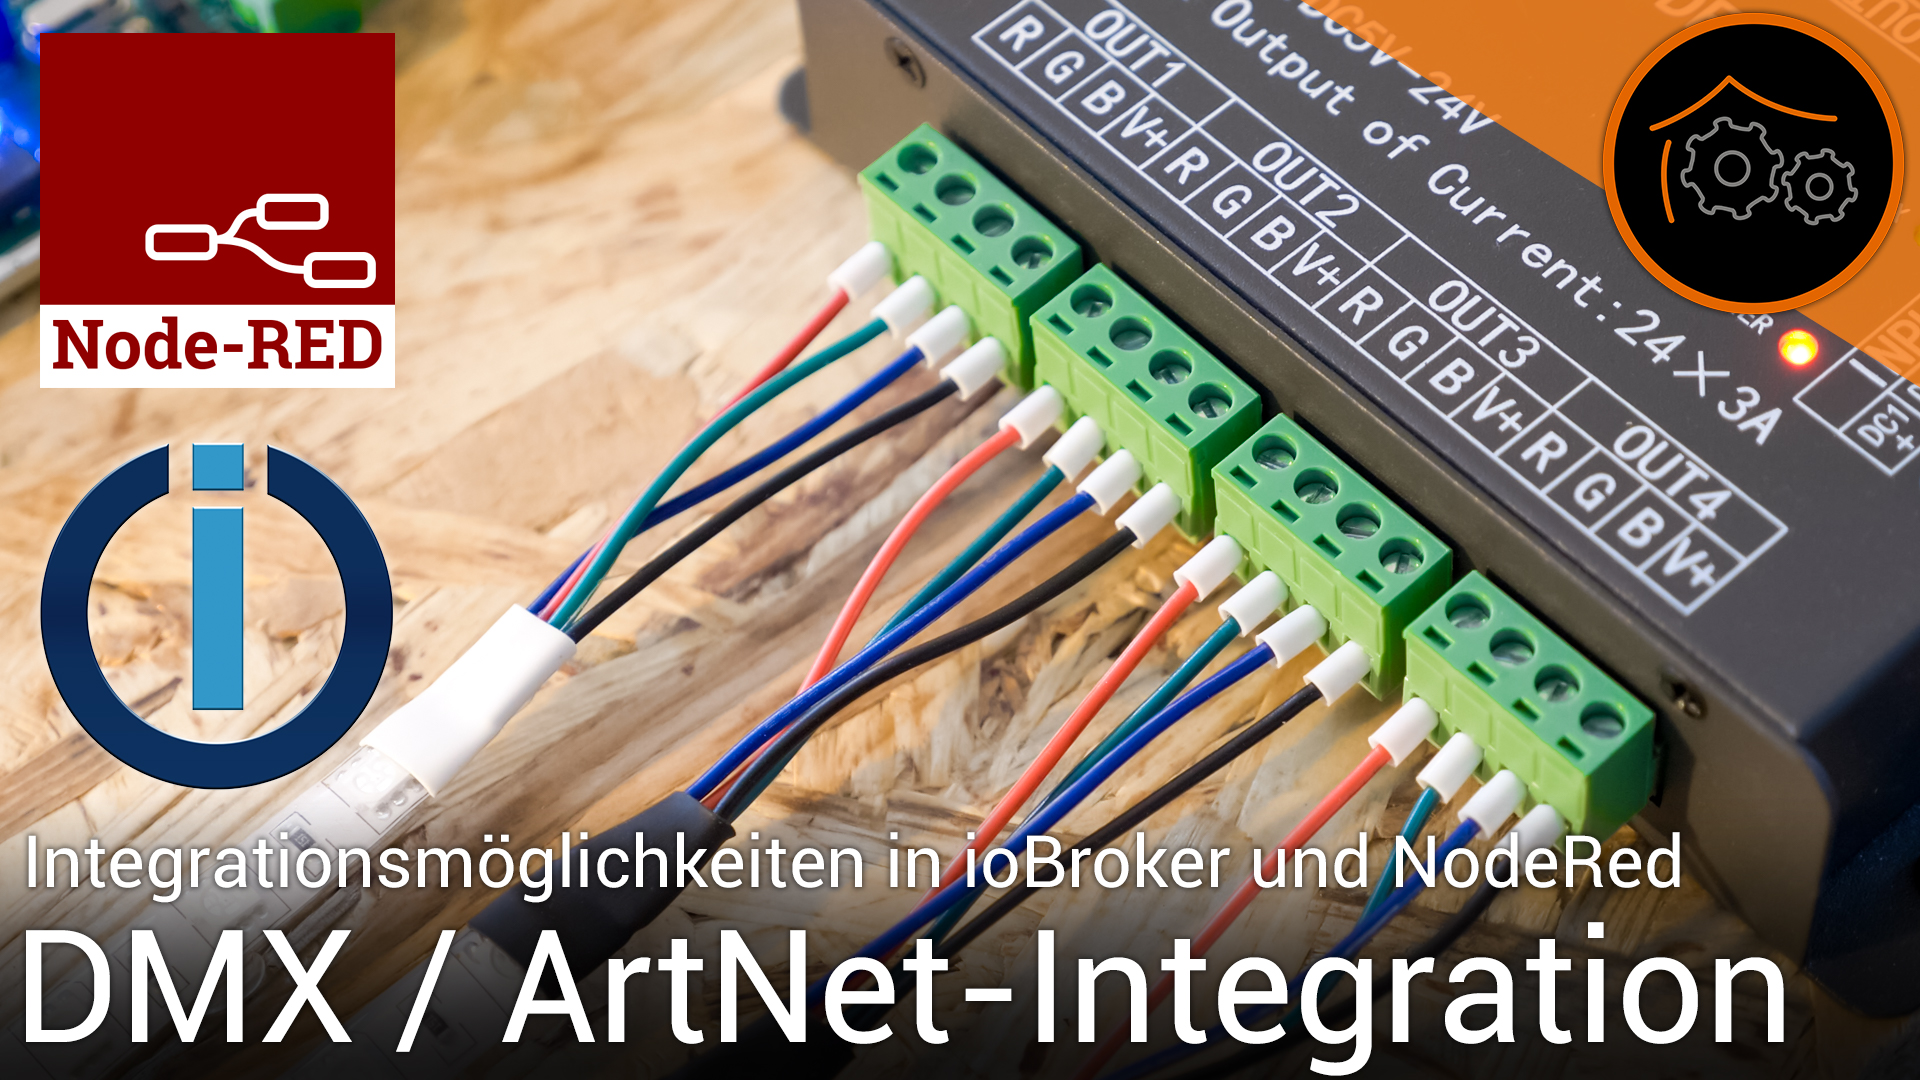 DMX - Teil 4 - Integration in ioBroker und Node-RED